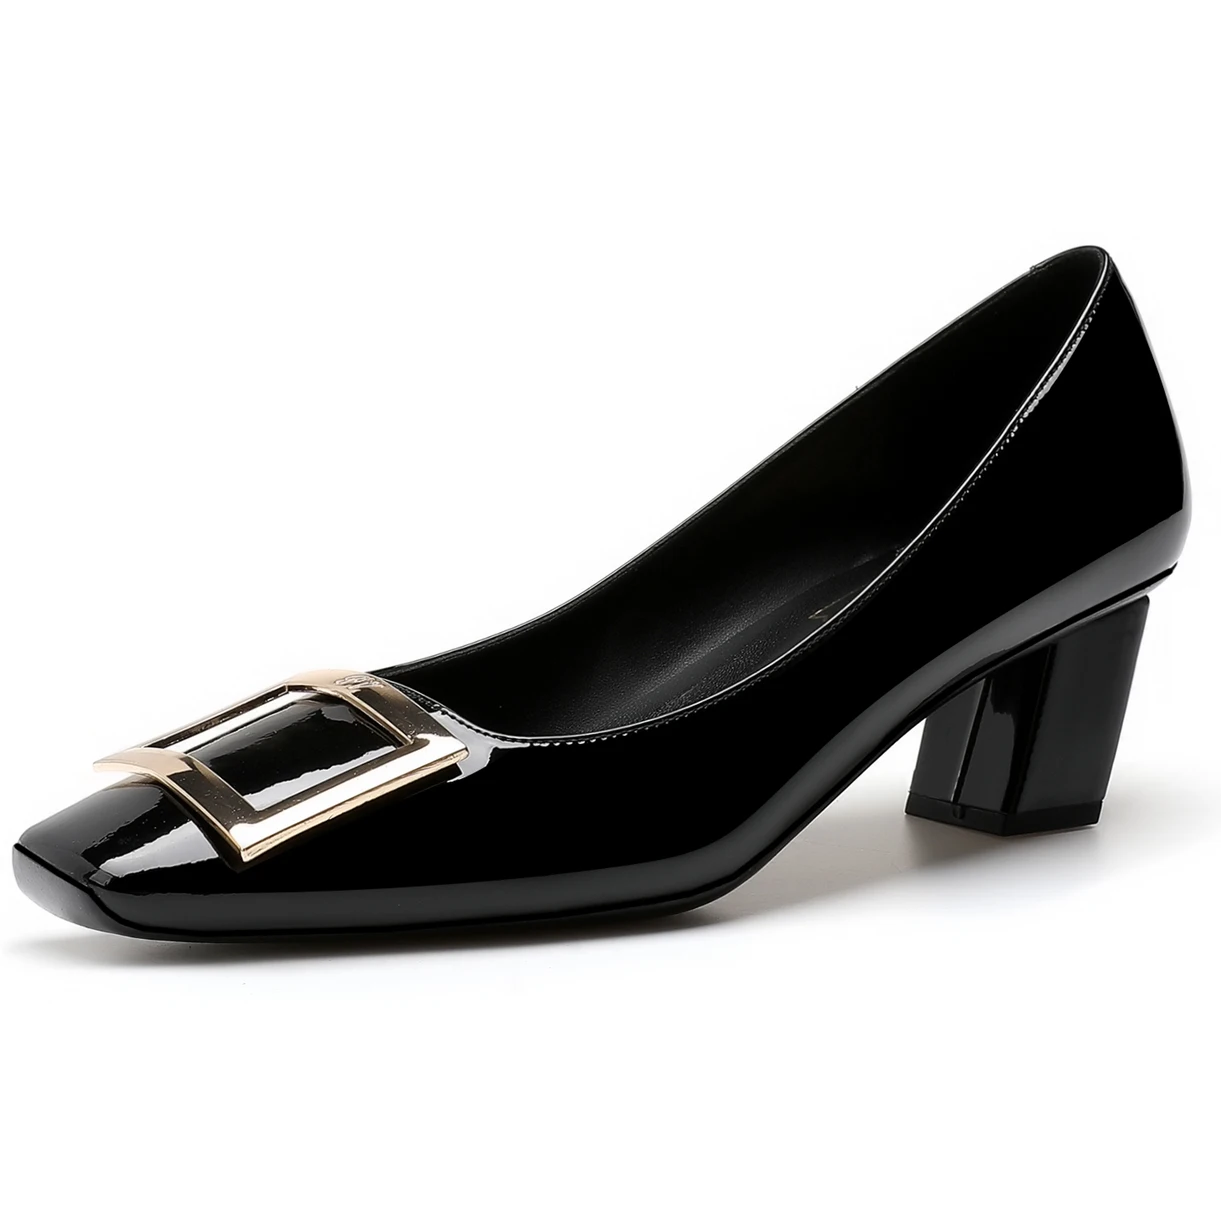 

[Измерьте длину вашей стопы до заказа] элегантные роскошные дизайнерские женские туфли-лодочки с пряжкой на квадратном каблуке 76-CHC-33